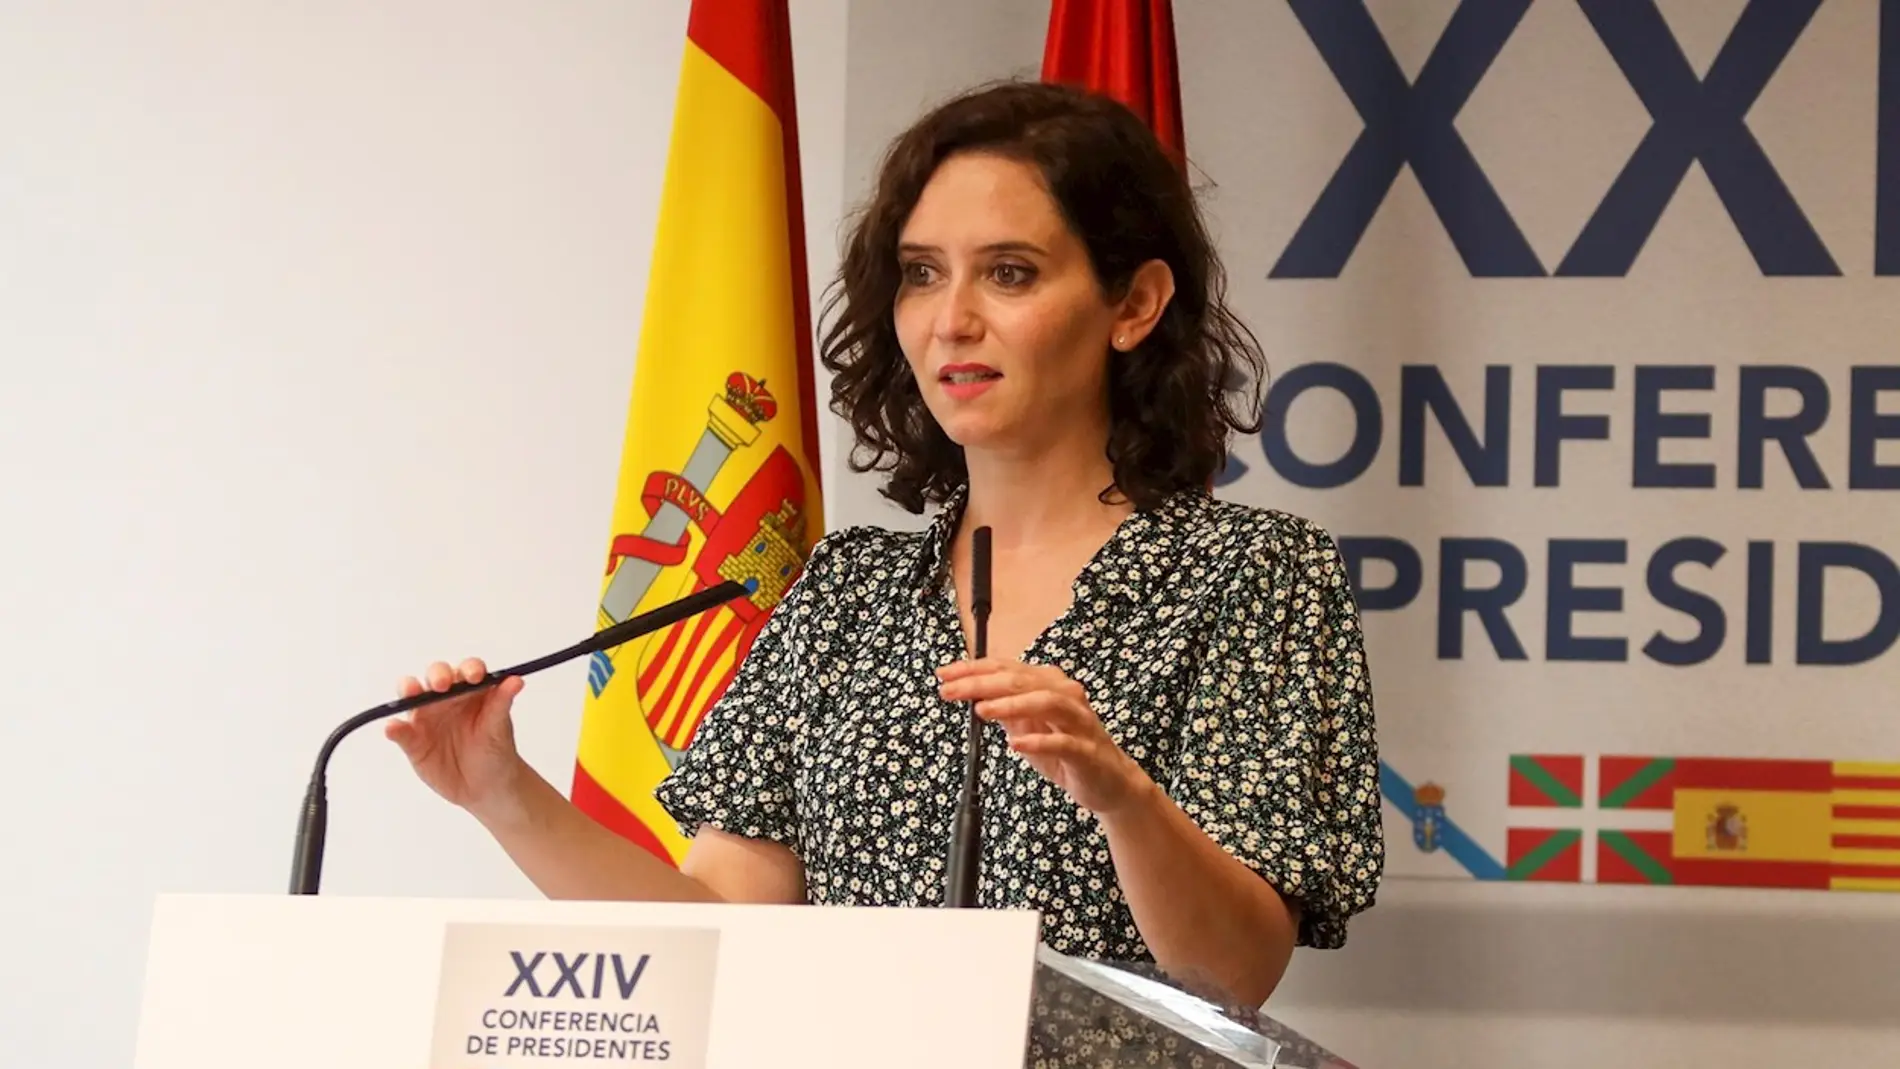 La presidenta de la Comunidad de Madrid, Isabel Díaz Ayuso, comparece tras la Conferencia de Presidentes